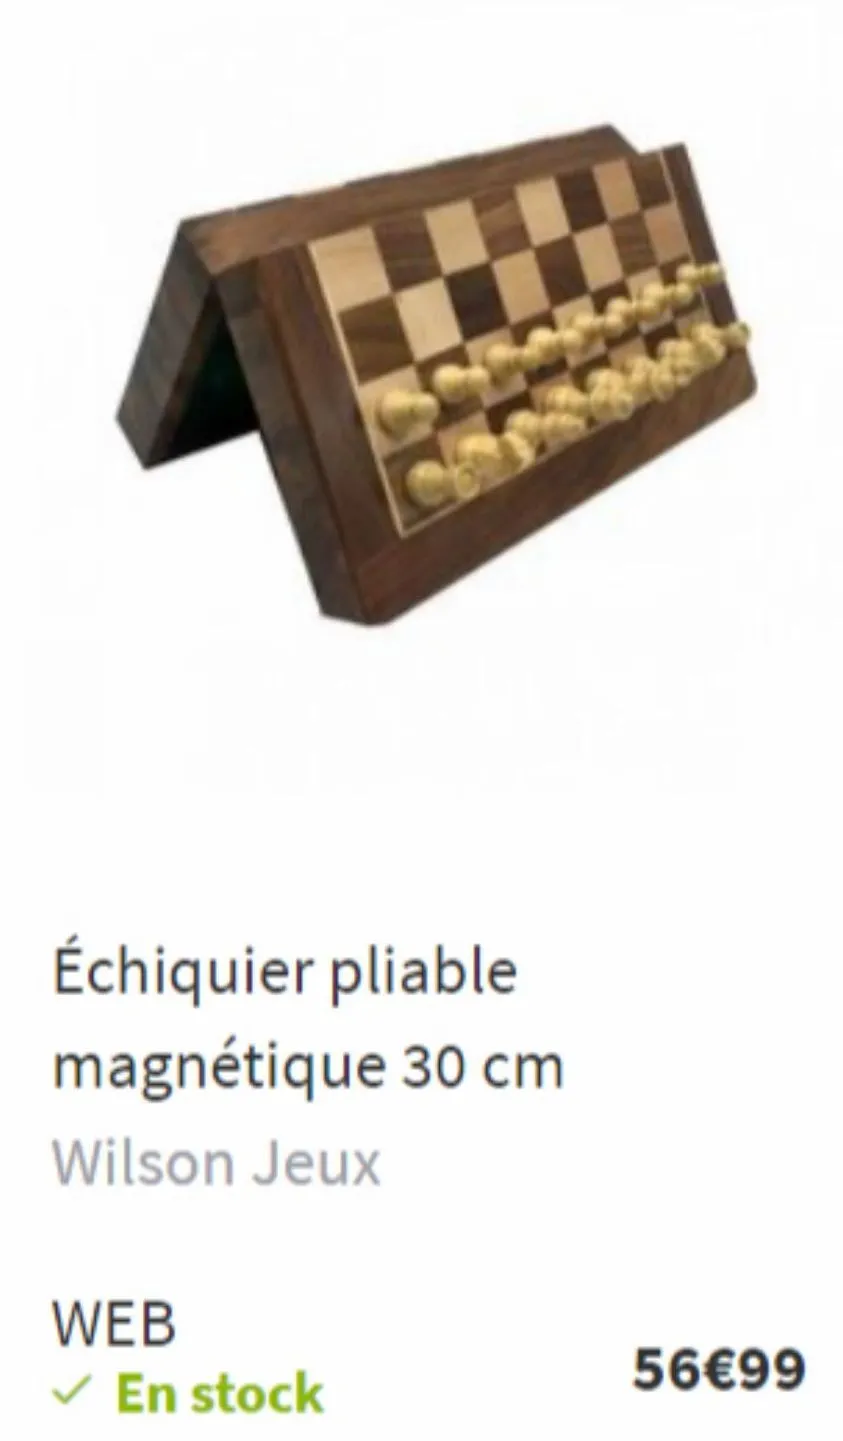 échiquier pliable magnétique 30cm